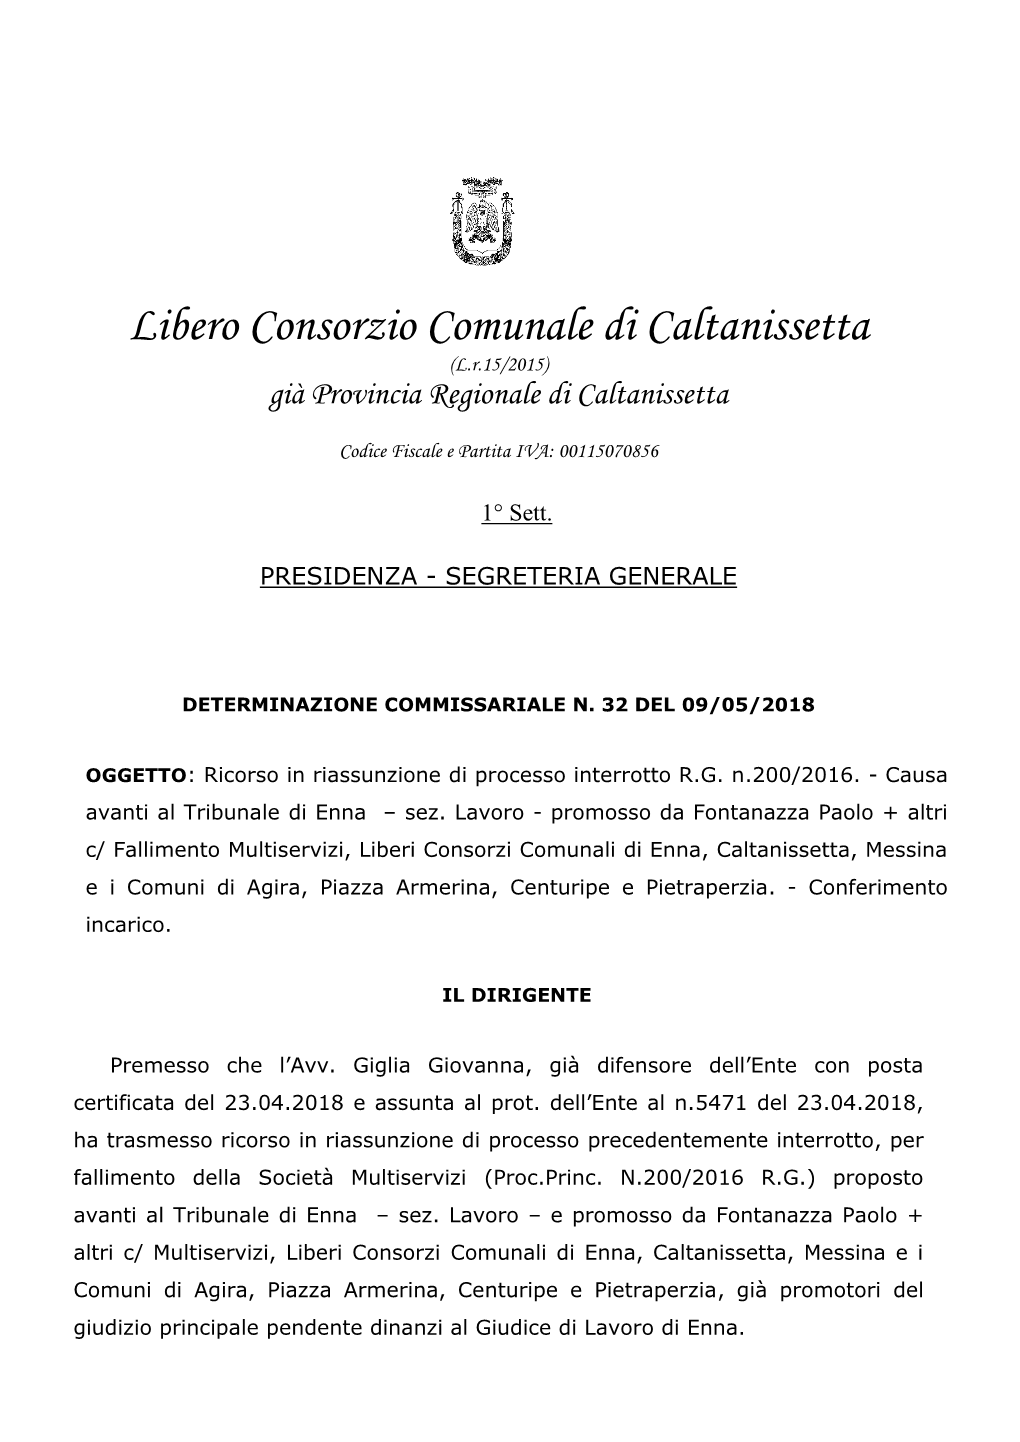 Libero Consorzio Comunale Di Caltanissetta (L.R.15/2015) Già Provincia Regionale Di Caltanissetta